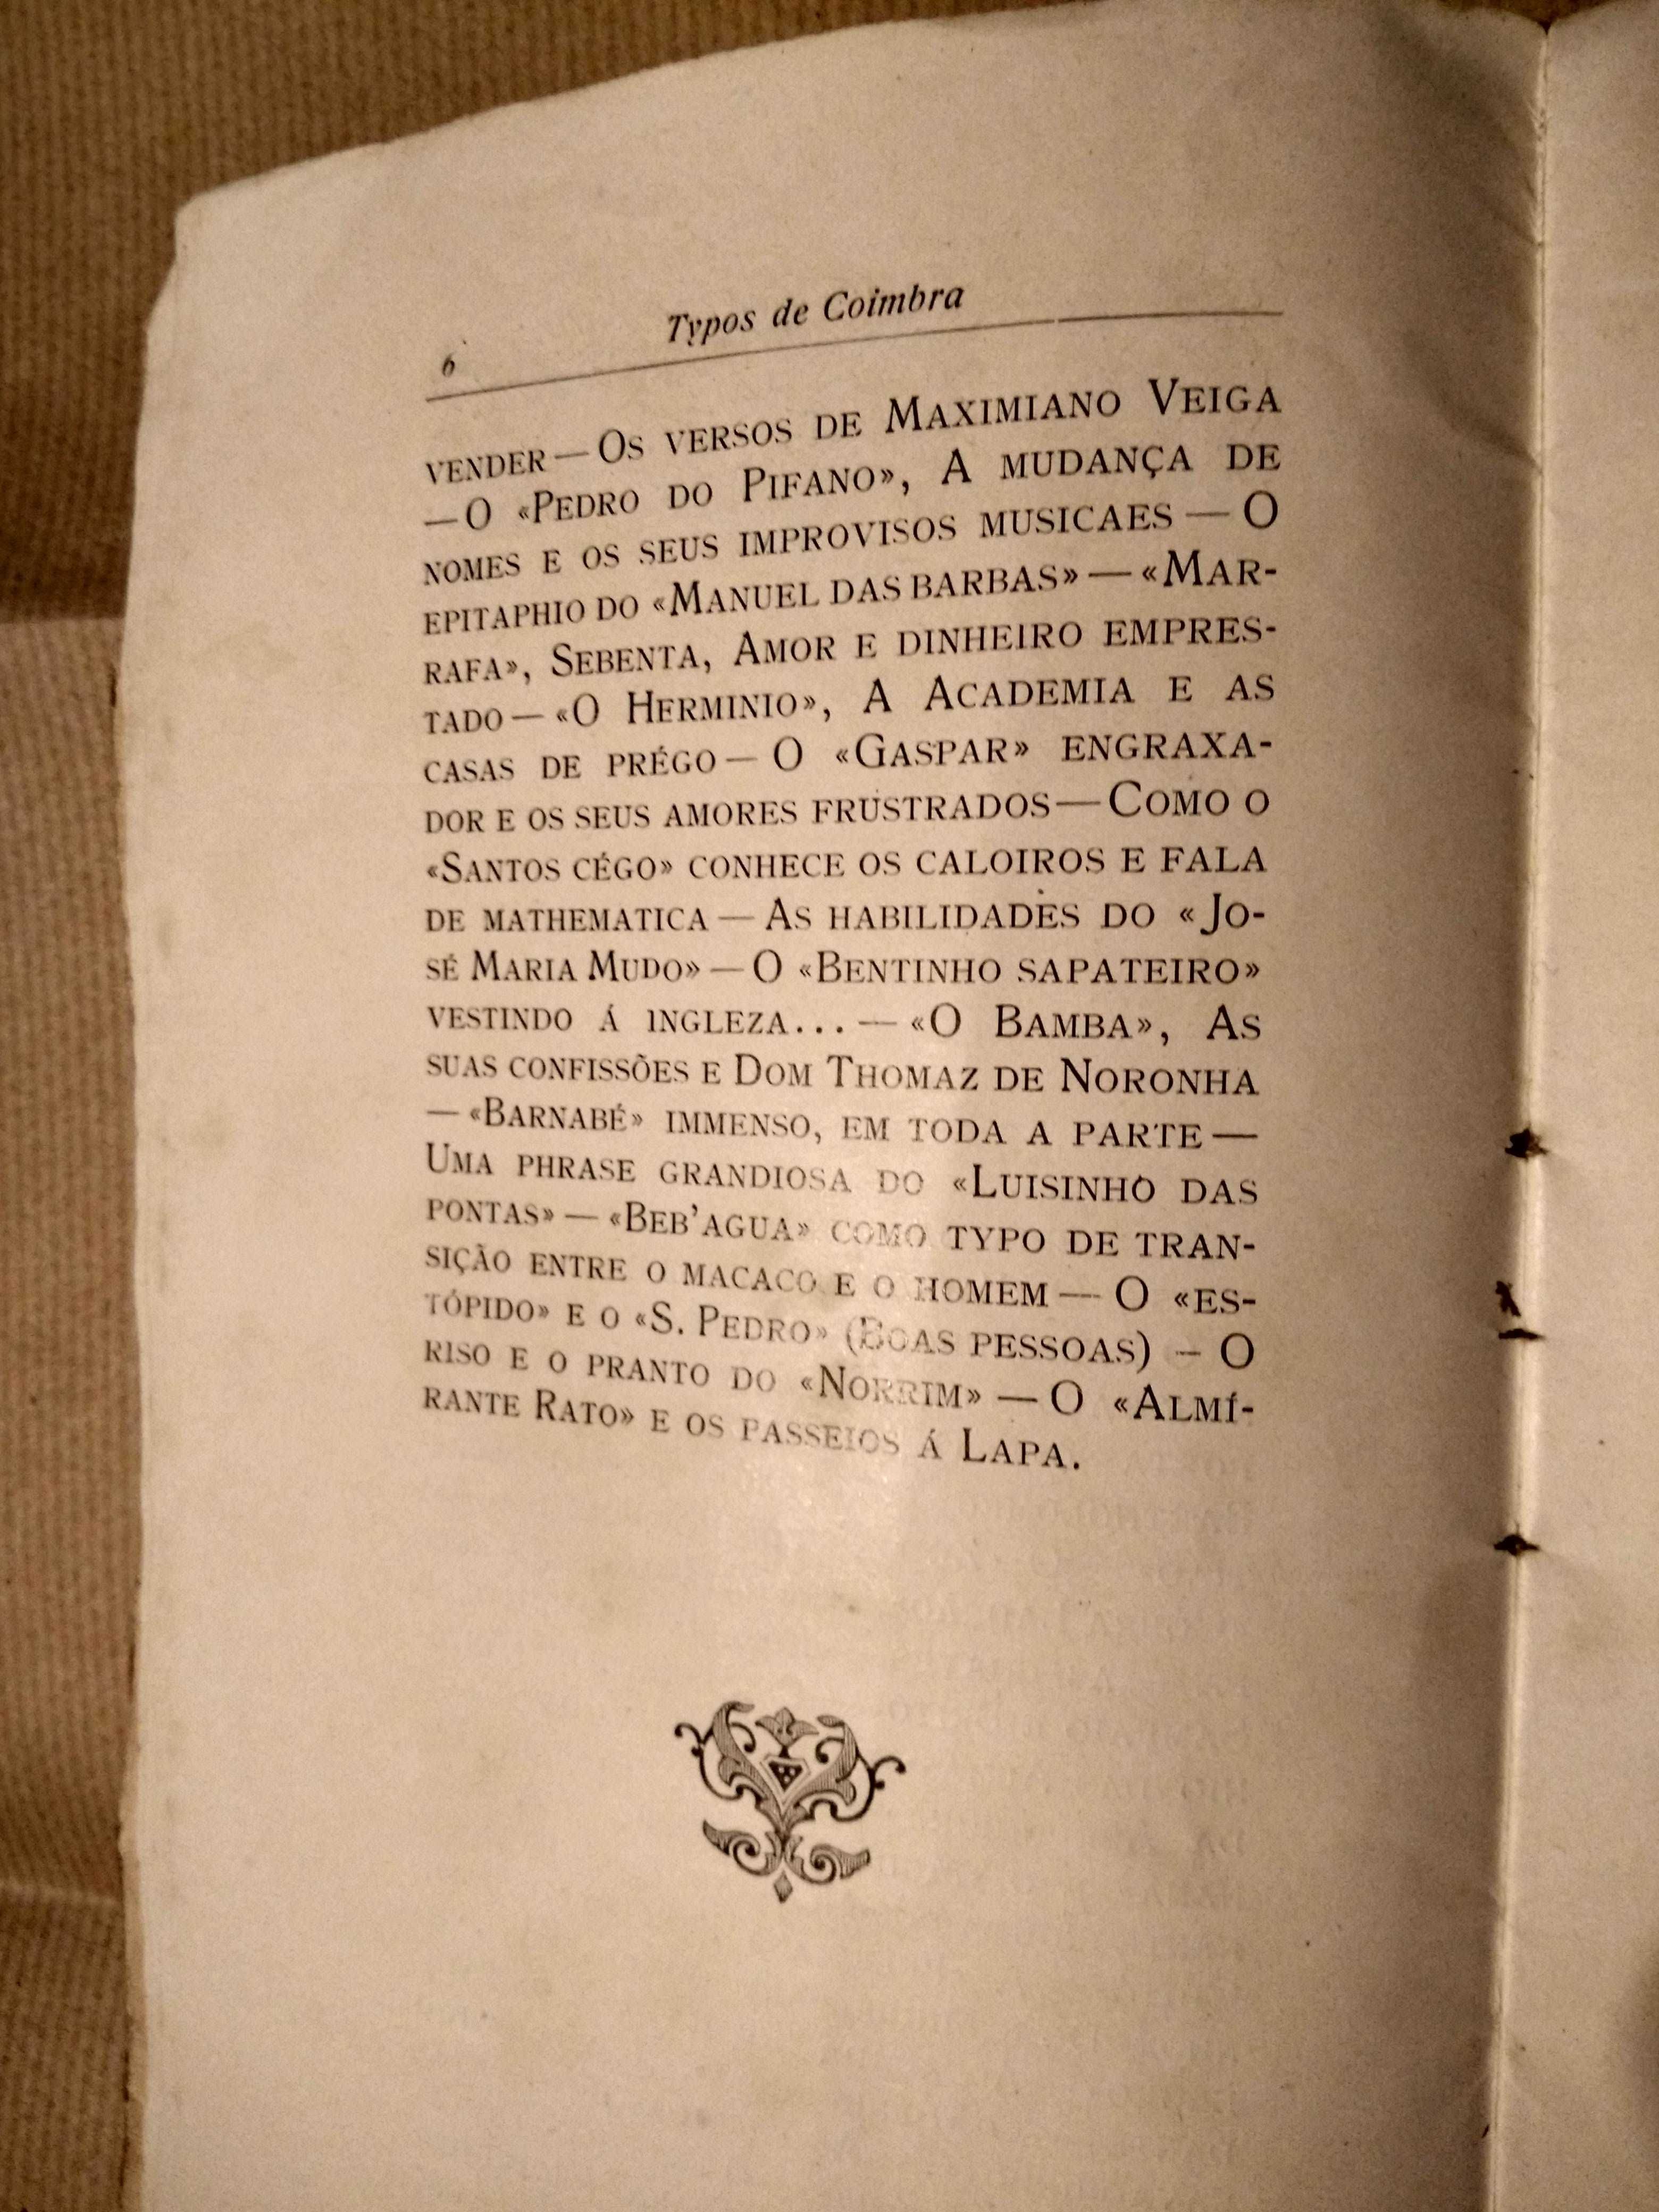 Typos de Coimbra - Mário Monteiro - 1908 - Muito Raro